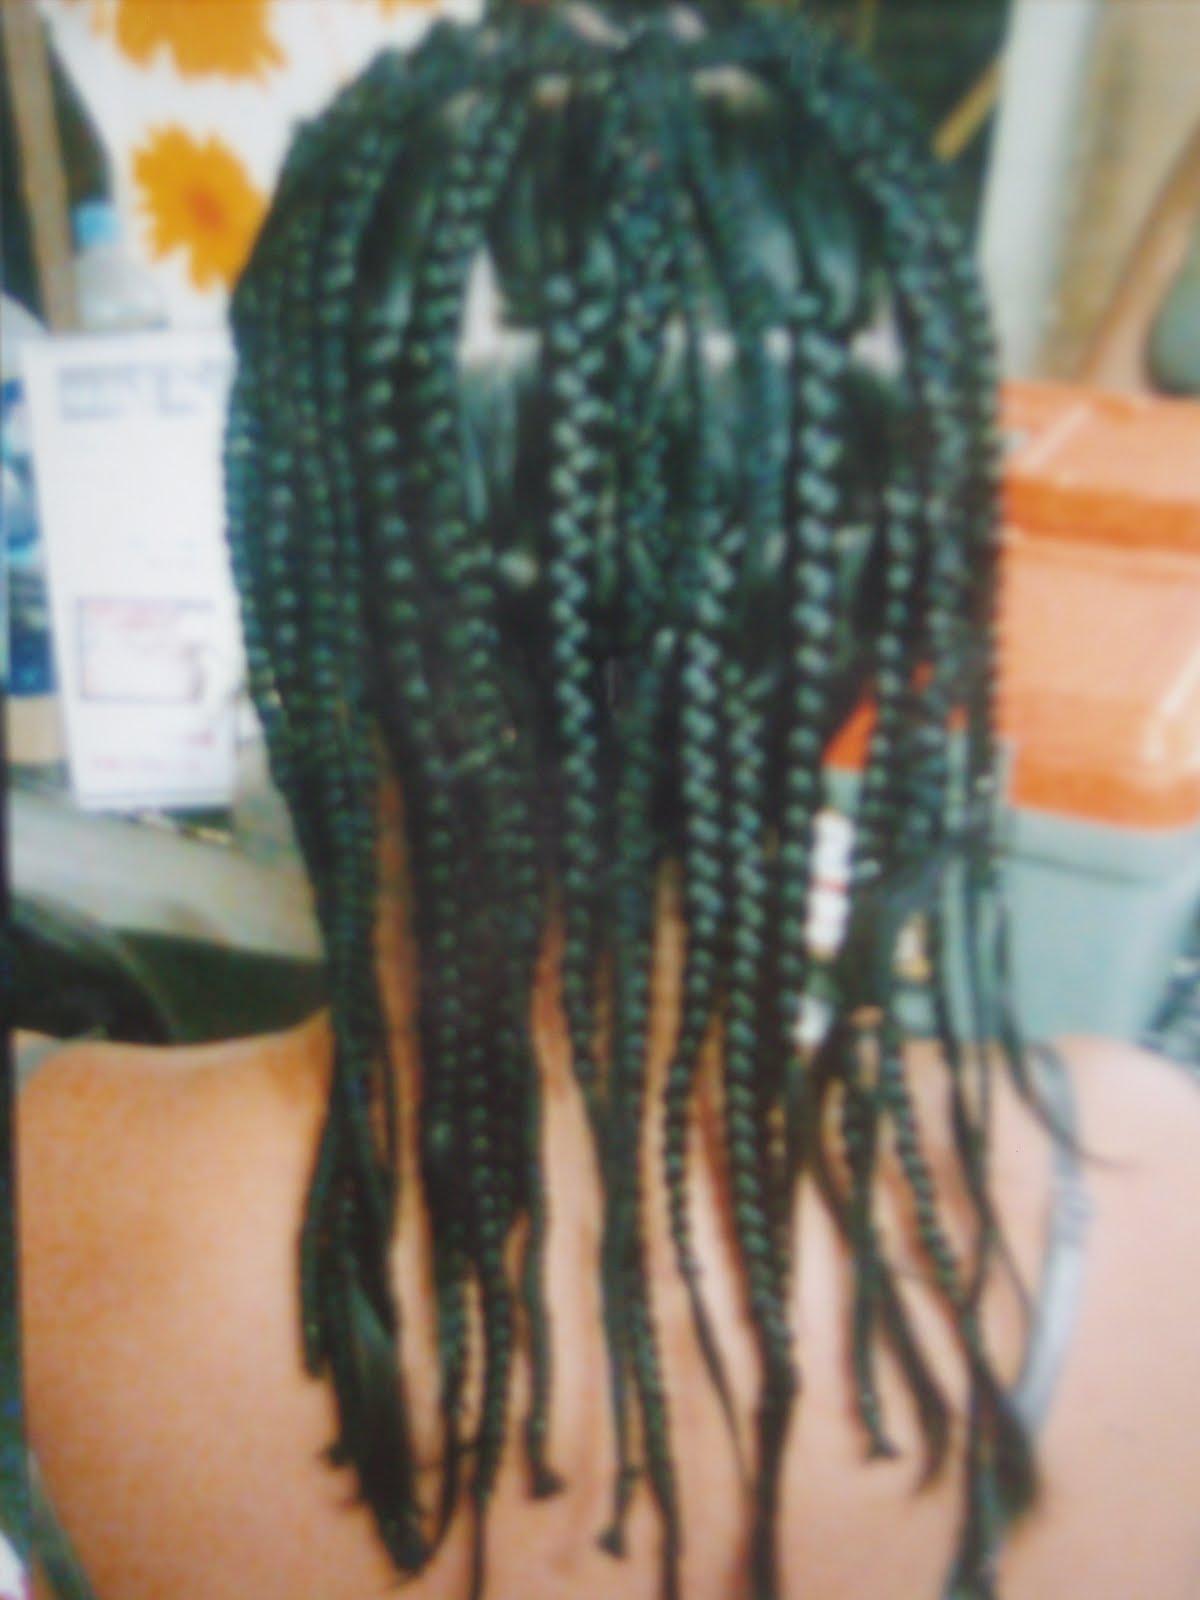 My braided hair in Boracay